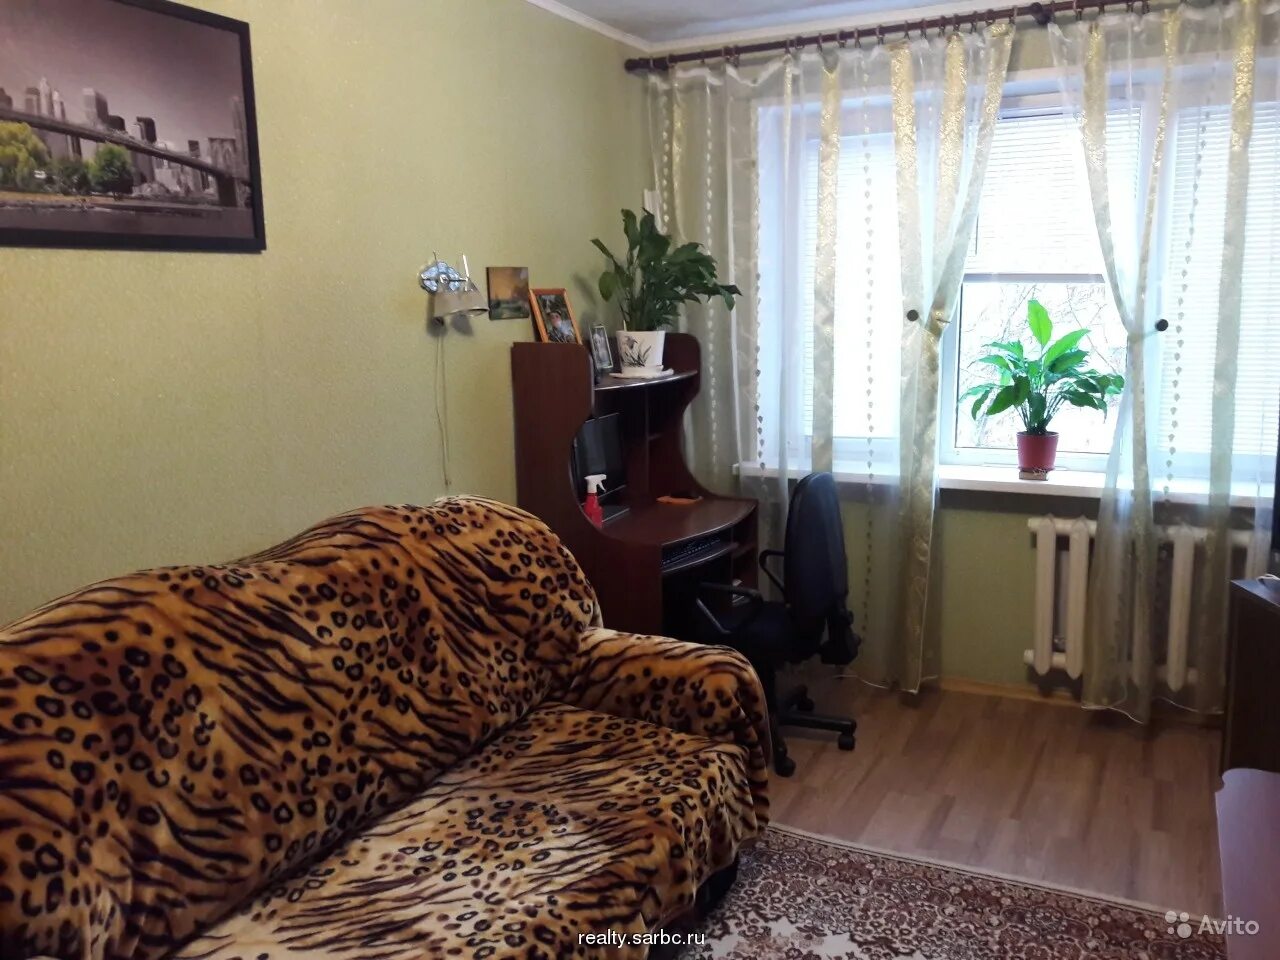 Купить комнату в саратове ленинский. Квартира в России. Квартира 3 комнатная в Саратове. Одесская 11 Саратов квартира купить 3 комнатная.